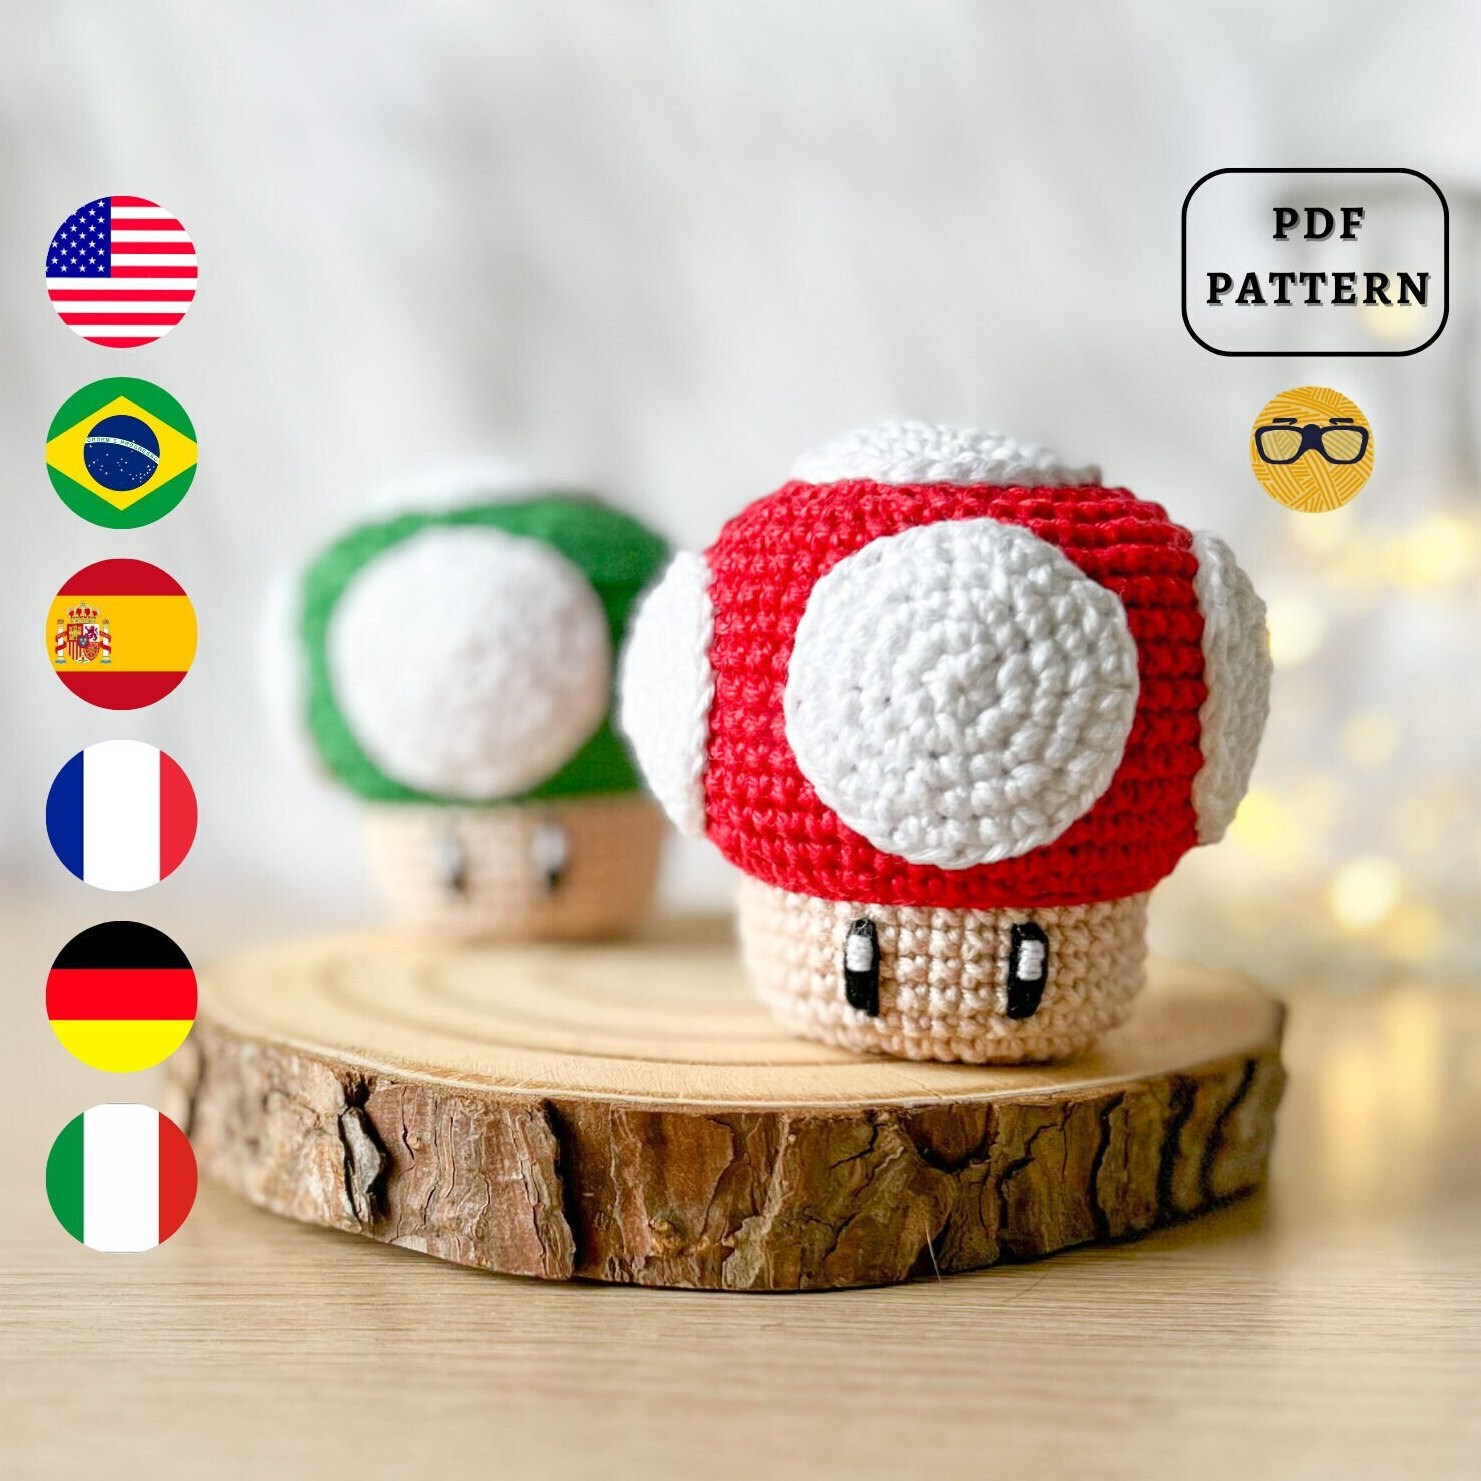 Luoshivp Crochet Kit for Beginners - Mushroom Crochet Kit